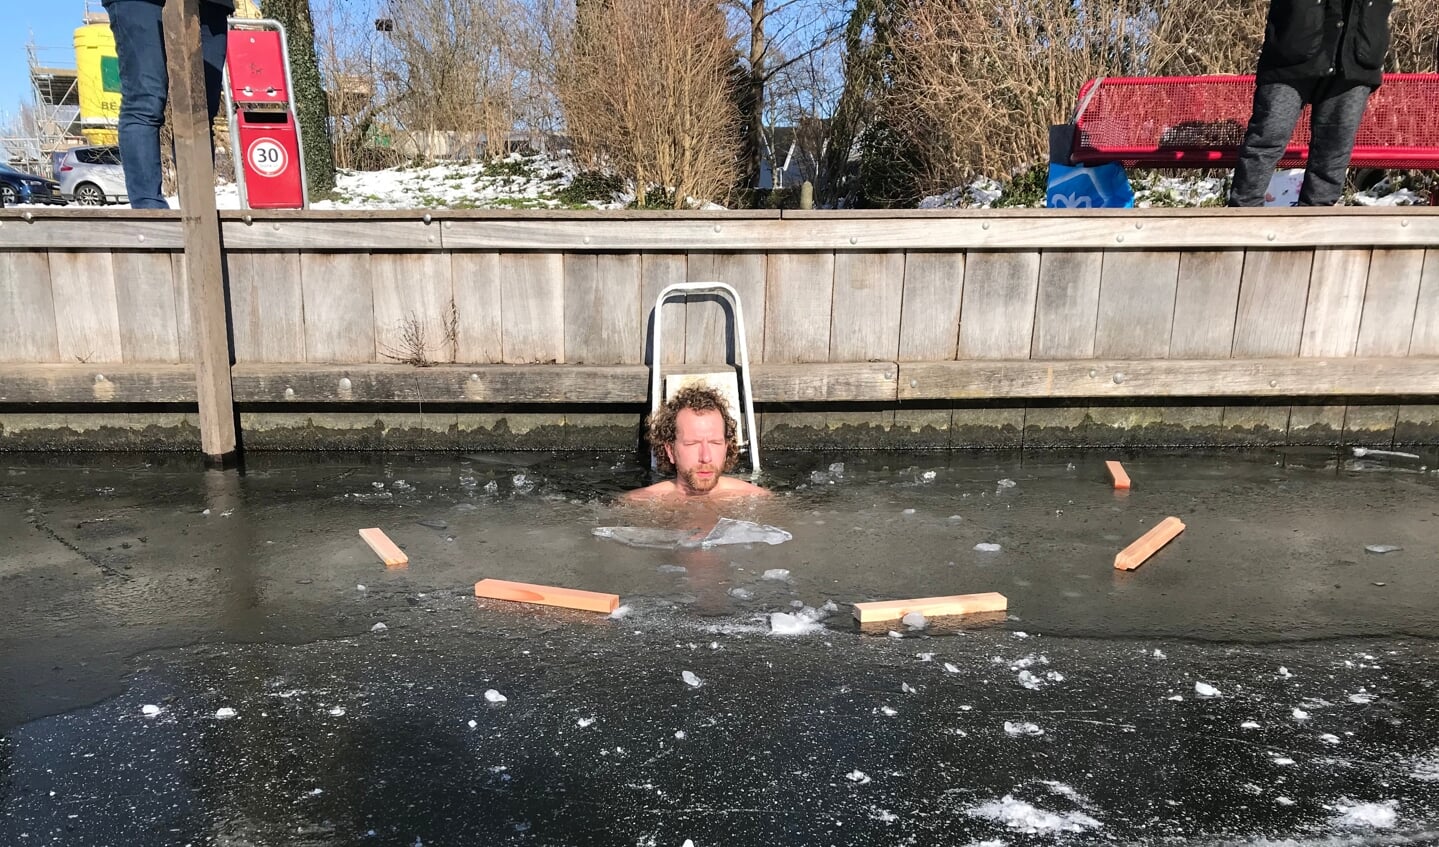 • Persoon in water is Lennard Muilwijk, hij nam in Hardinxveld-Giessendam een bad in het ijskoude water.